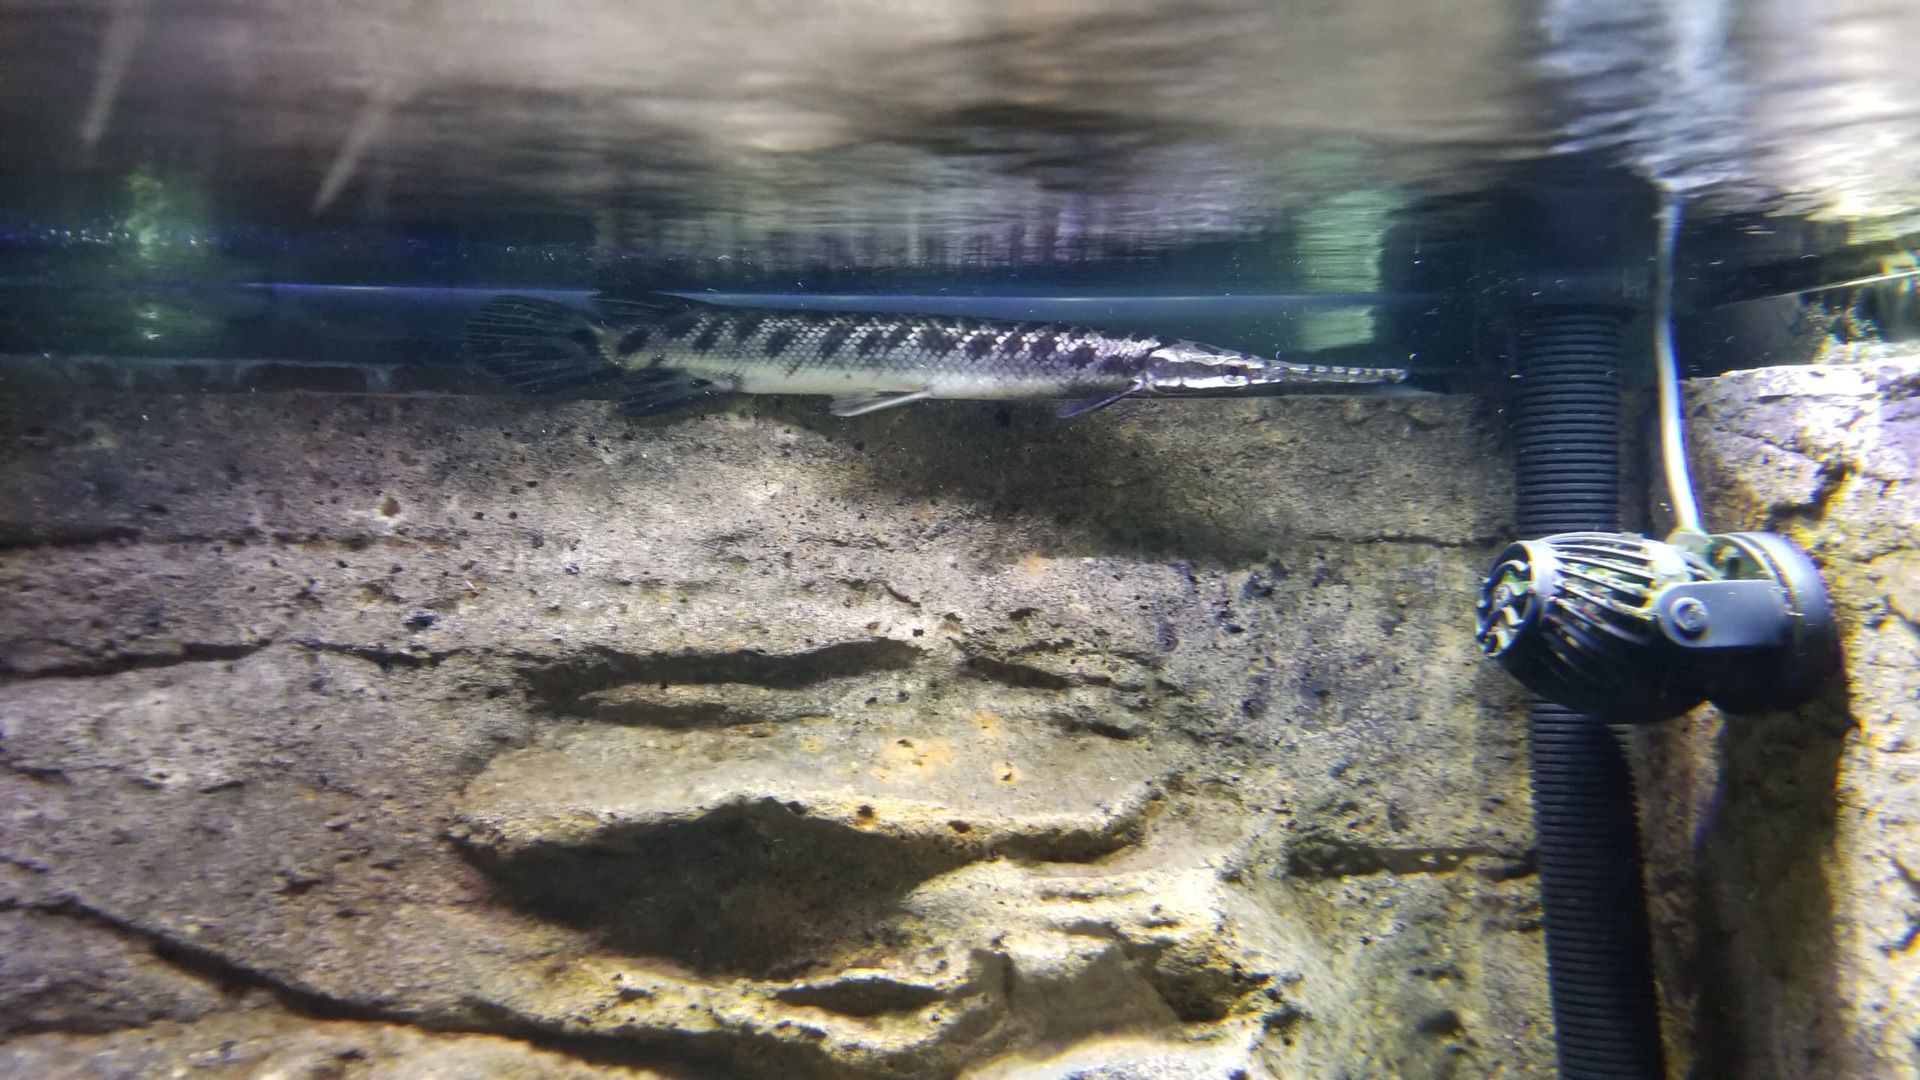 Tank fish Florida gar